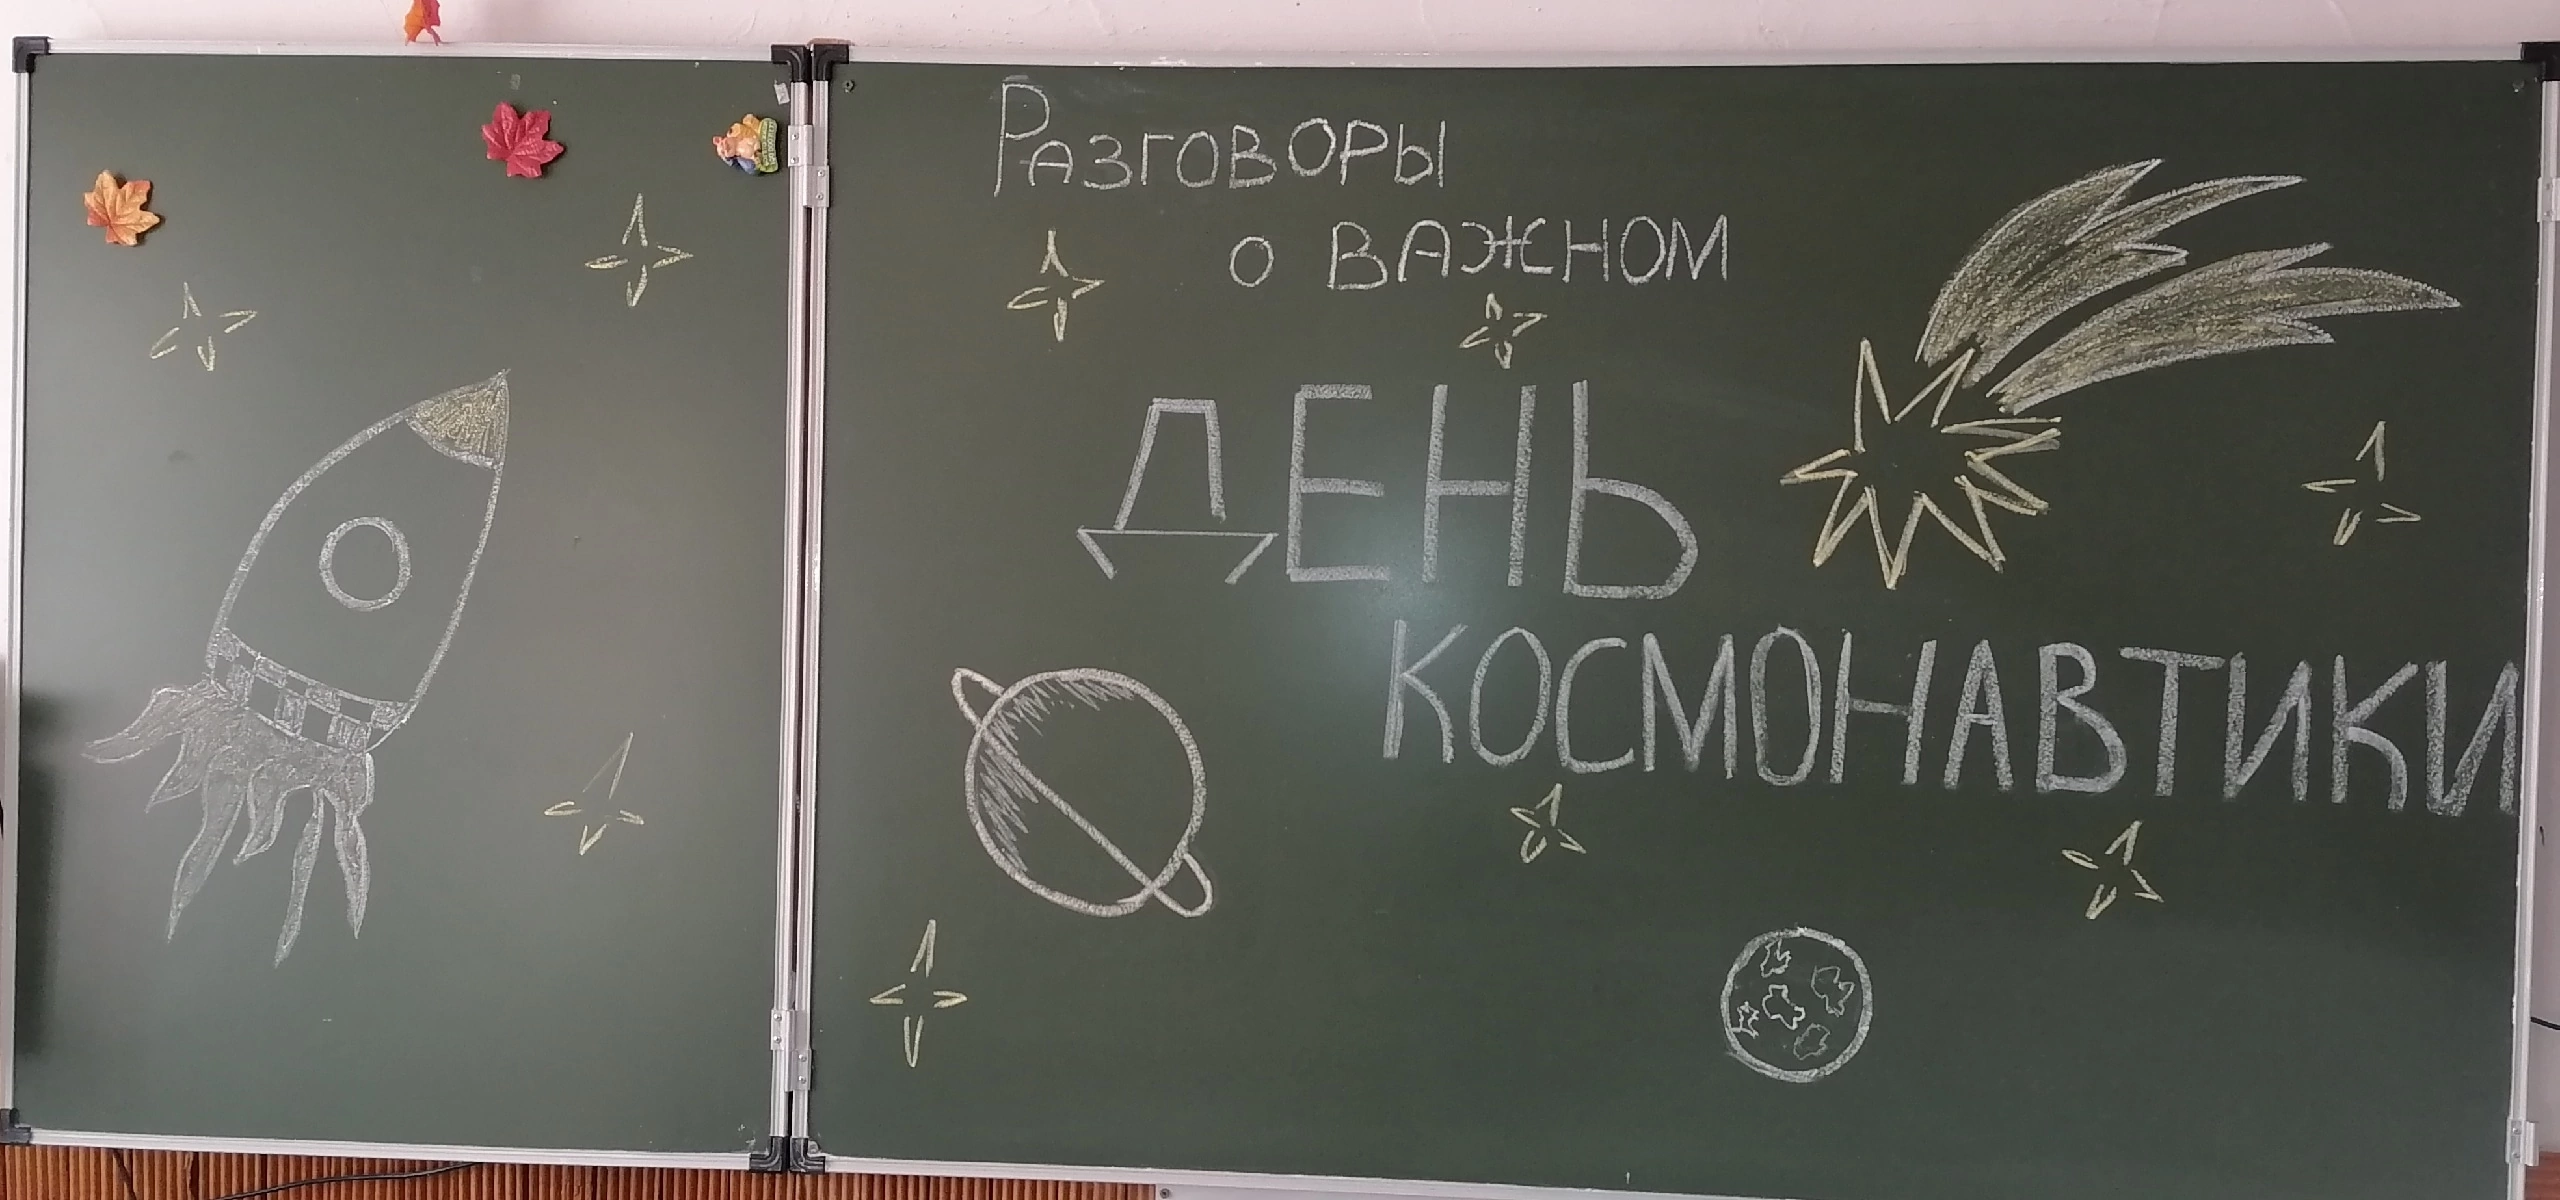 Россия мои горизонты оформление доски. Картинка разговоры о важном в школе.